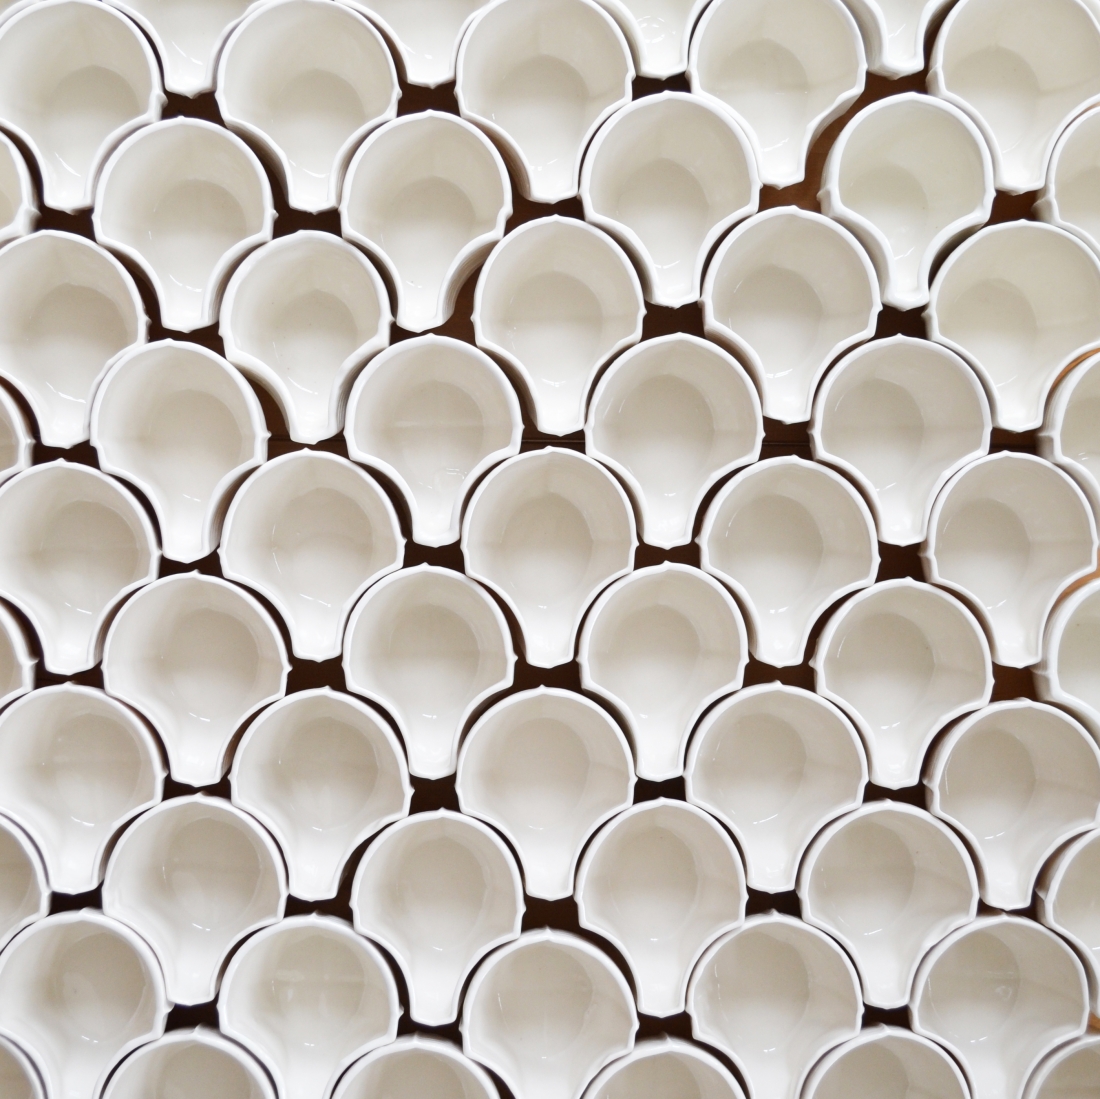 Ceramics Exhibition Building Centre Fettle Studio Tessellating Cups